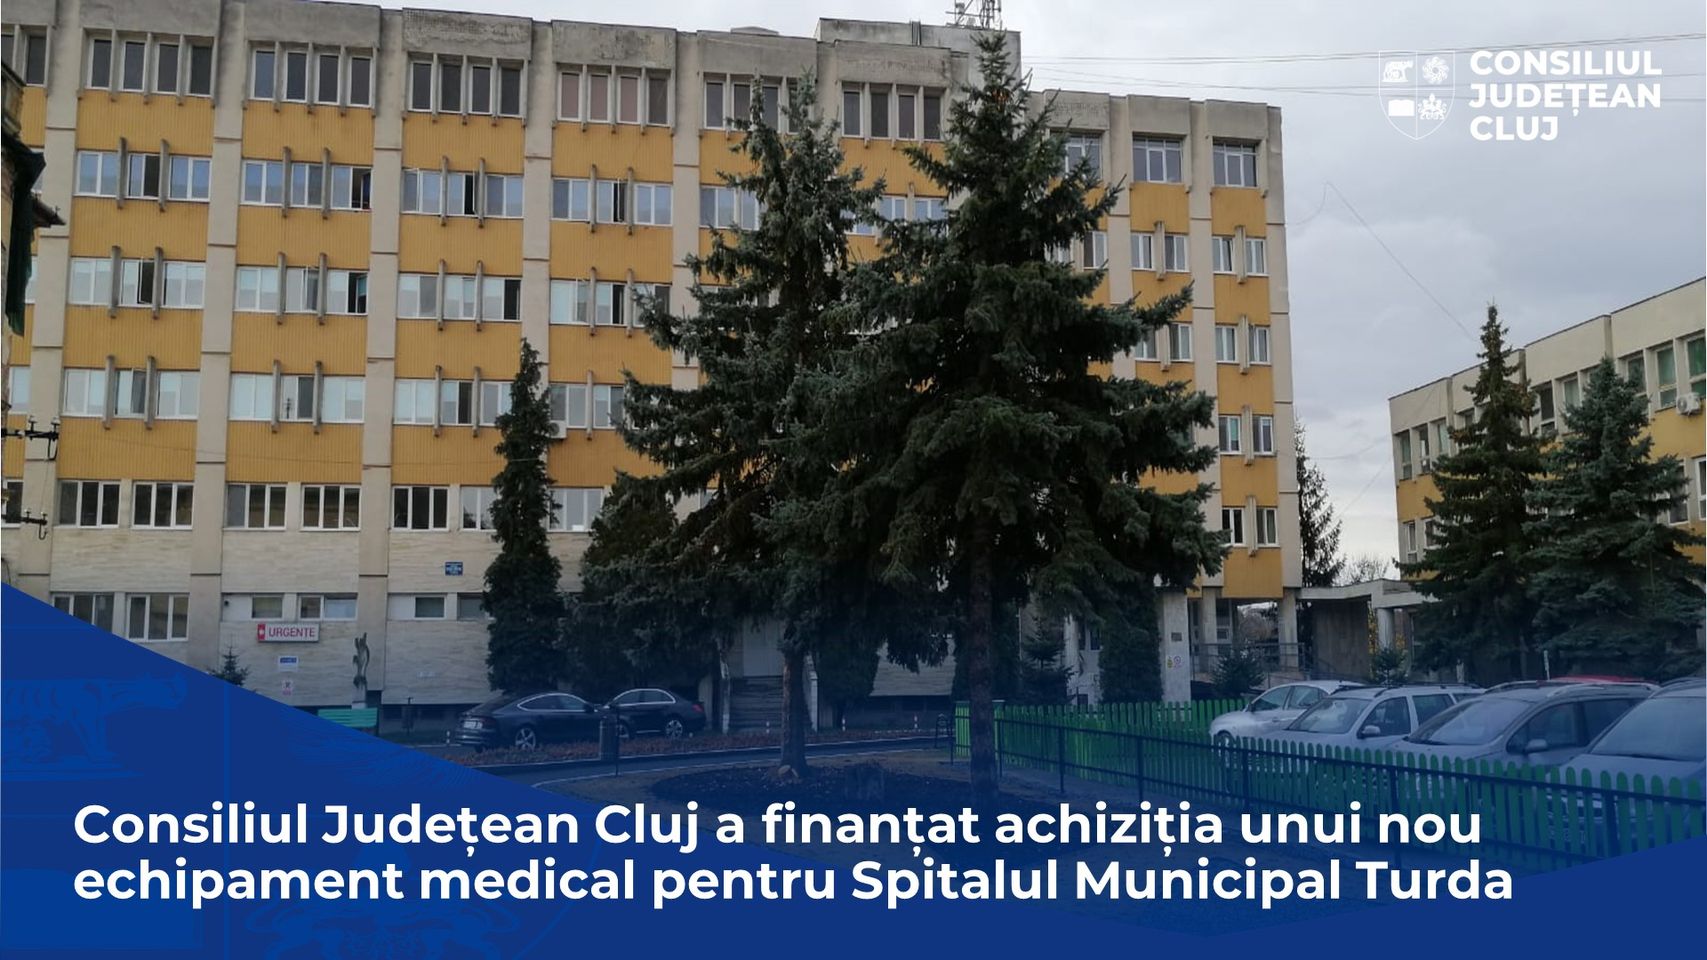 Nou echipament medical pentru Spitalul Municipal Turda finantat de Consiliul Judetean Cluj., Nou echipament medical pentru Spitalul Municipal Turda finantat de Consiliul Judetean Cluj., Stiri Turda - MinaDeStiri